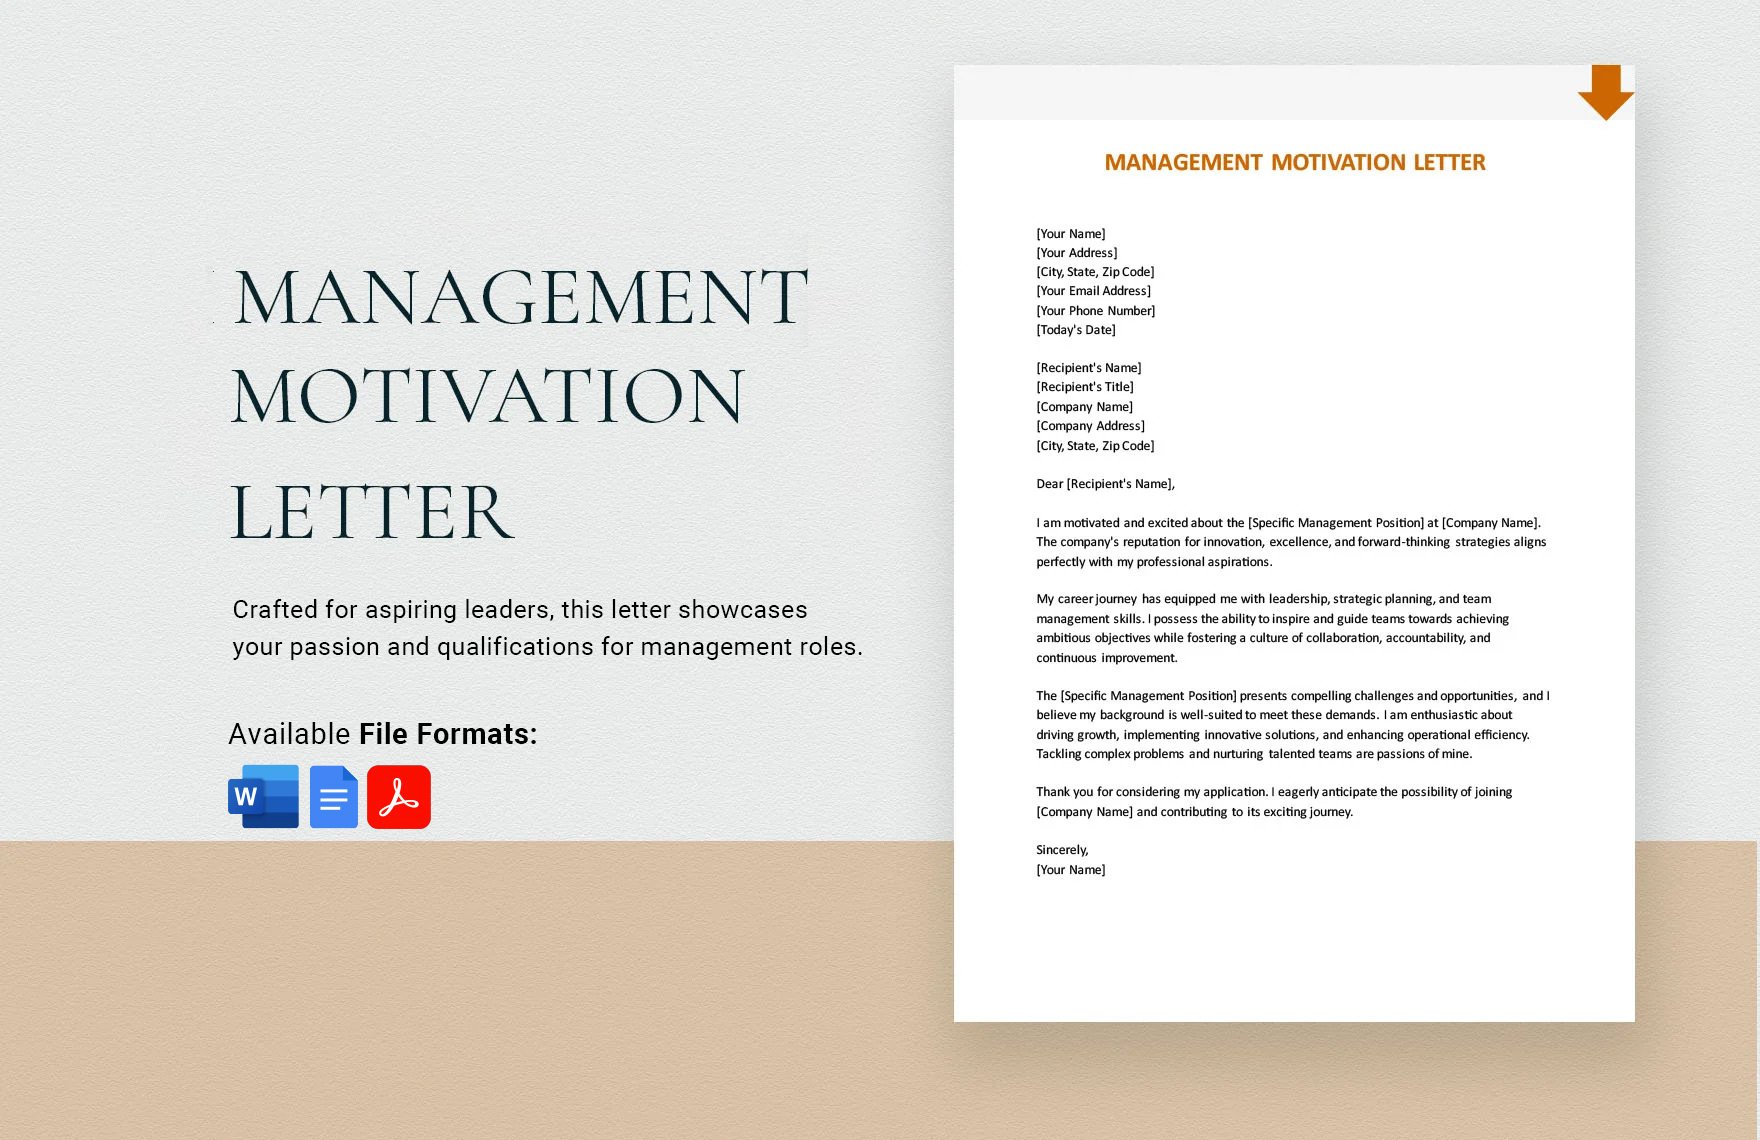 Management Motivation Letter in Word, Google Docs, PDF